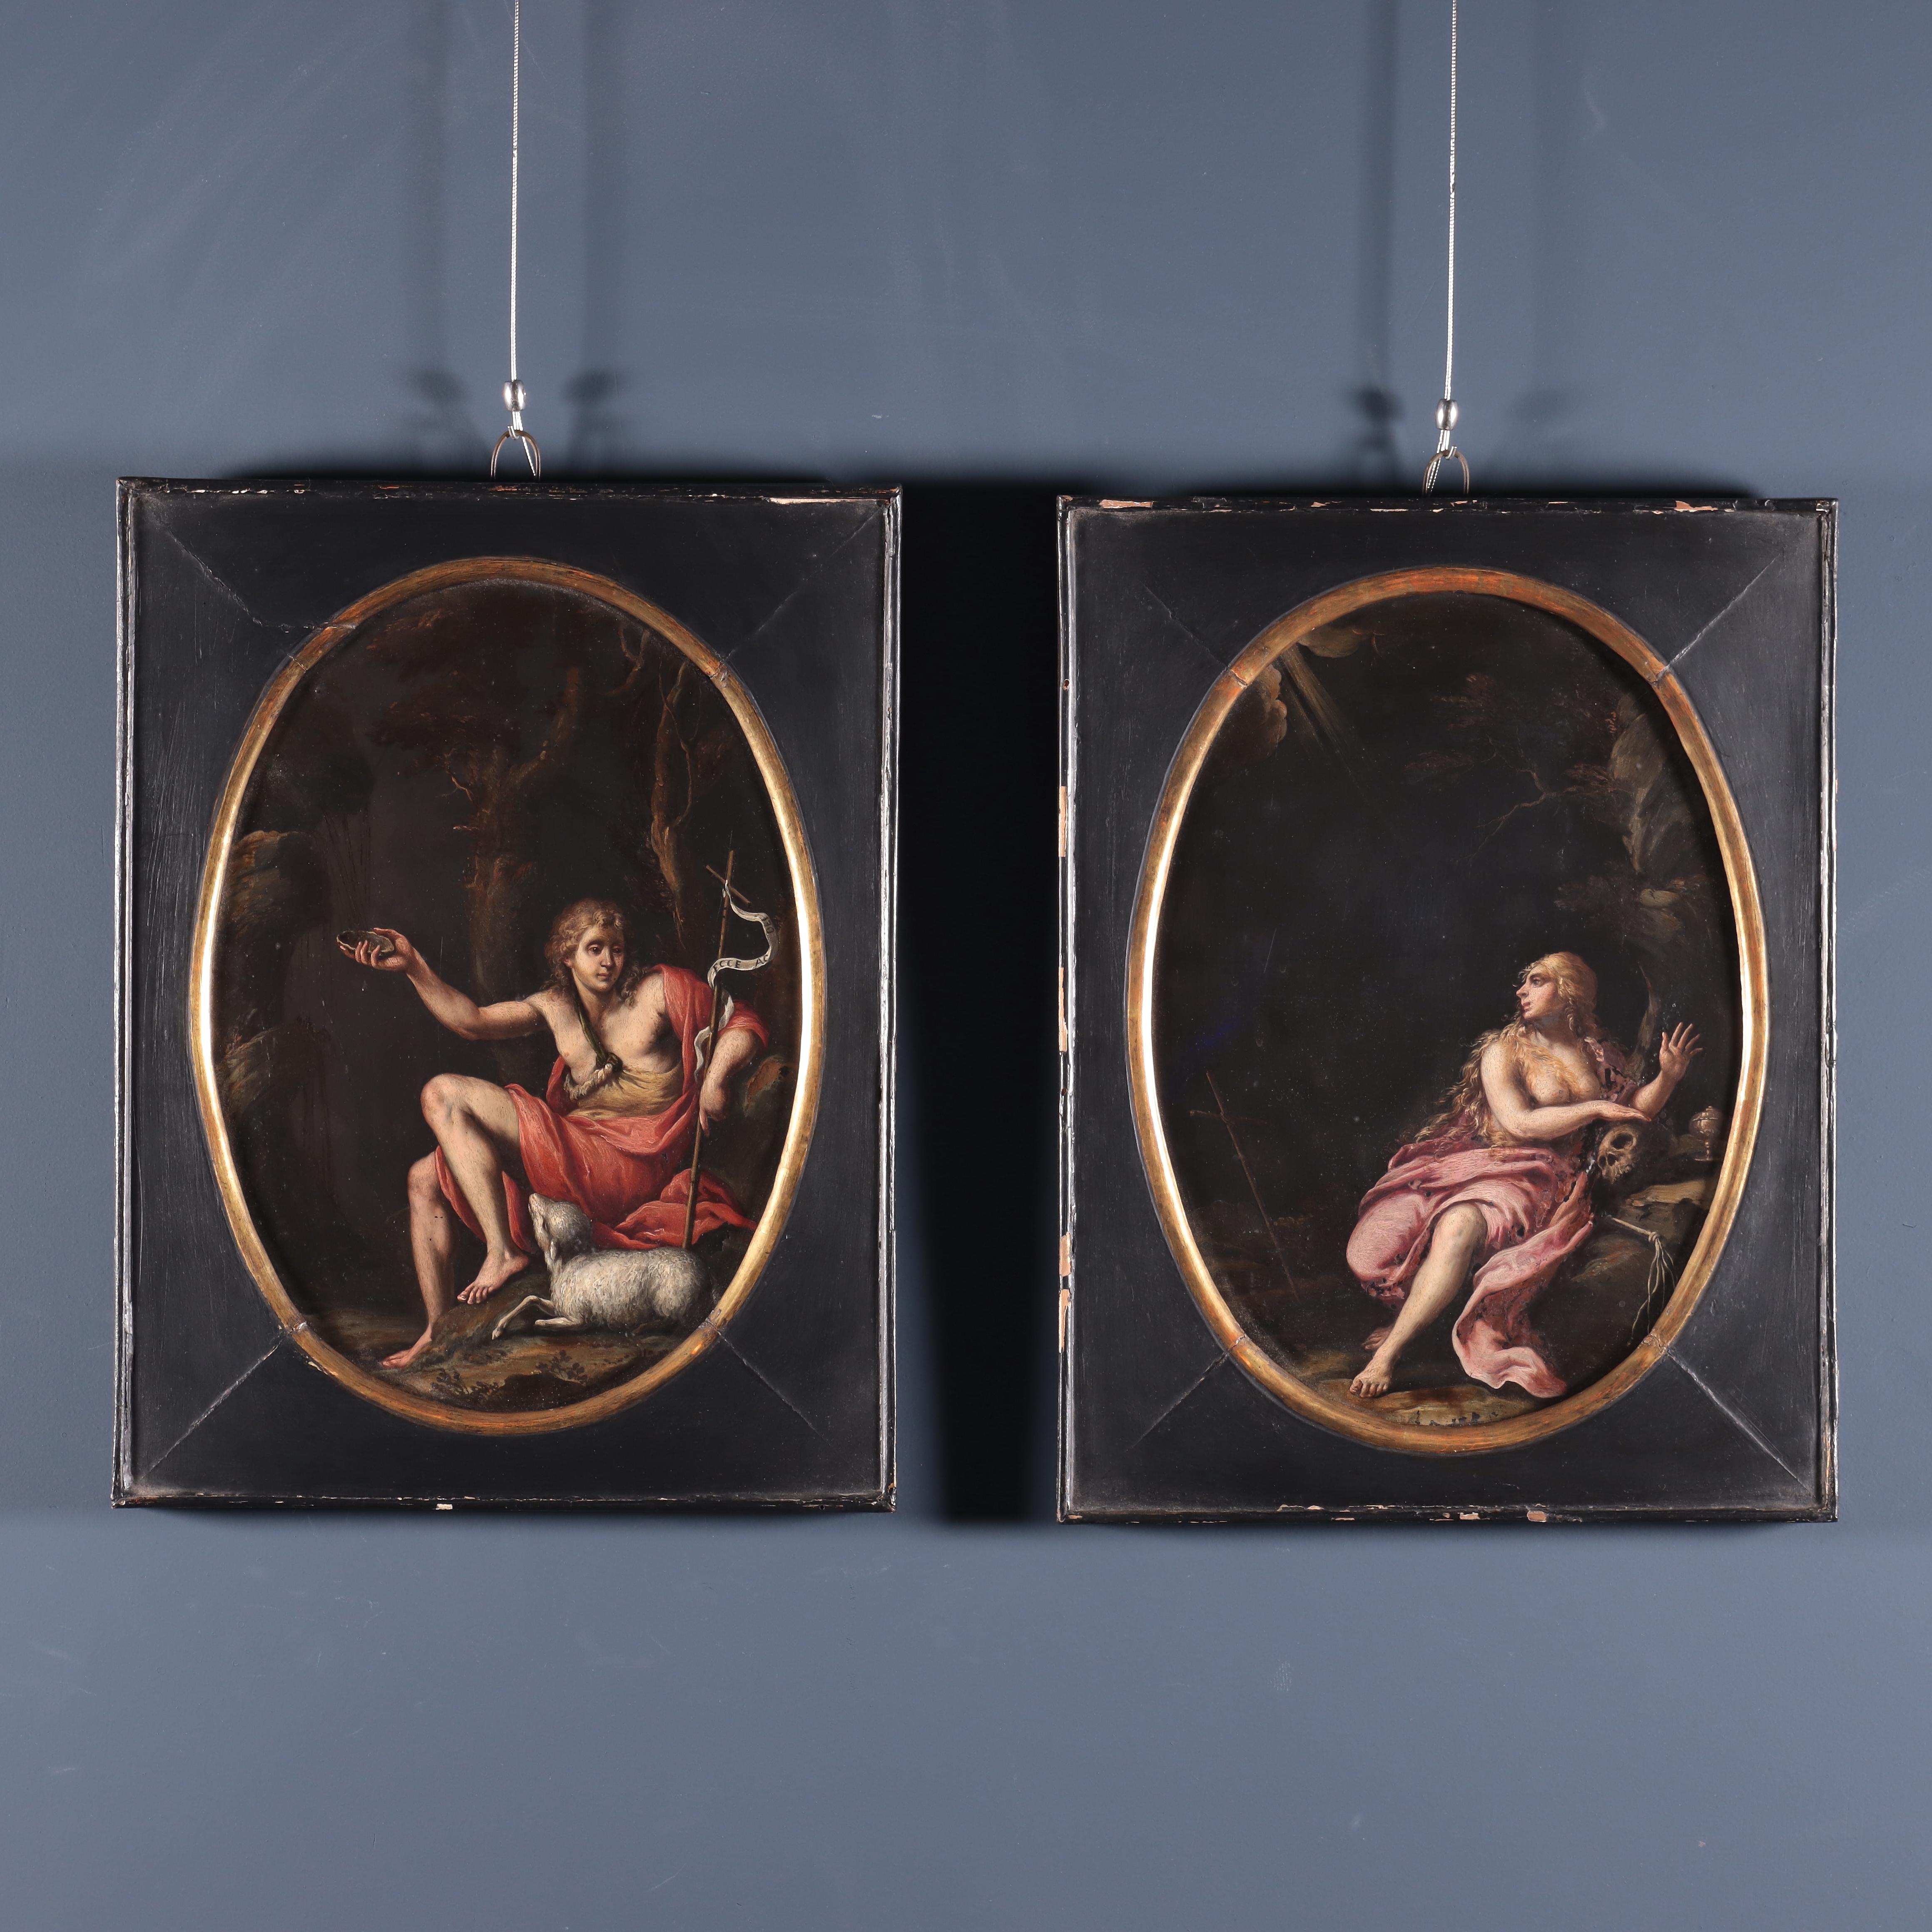 Madeleine pénitente et St. Johns, huile sur ardoise, début du 17e siècle  - Painting de Unknown